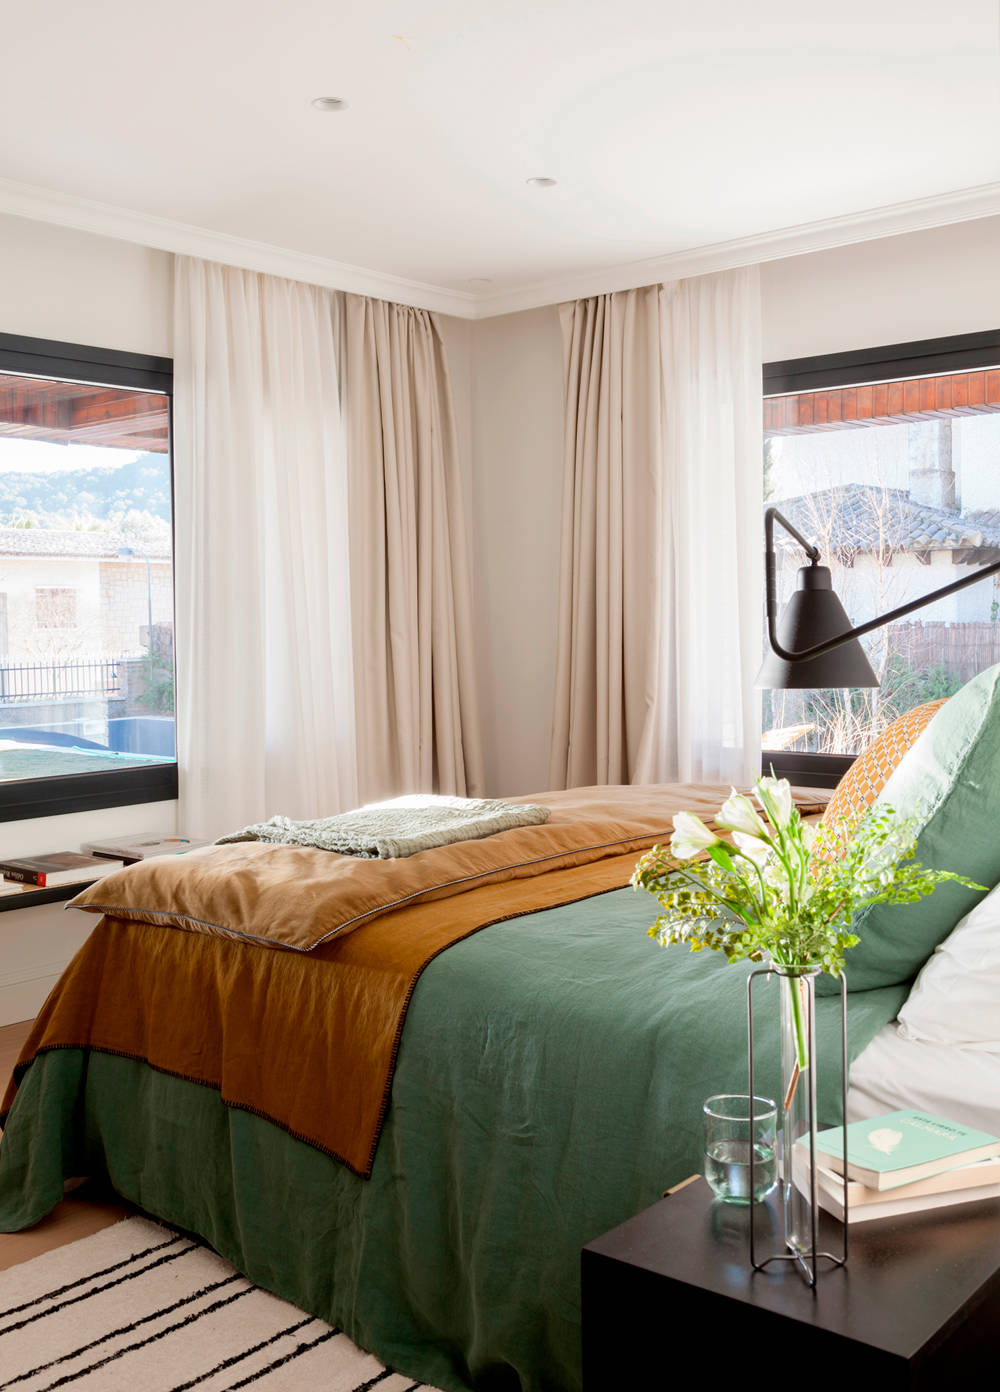 Dormitorio con doble cortinaje en las ventanas